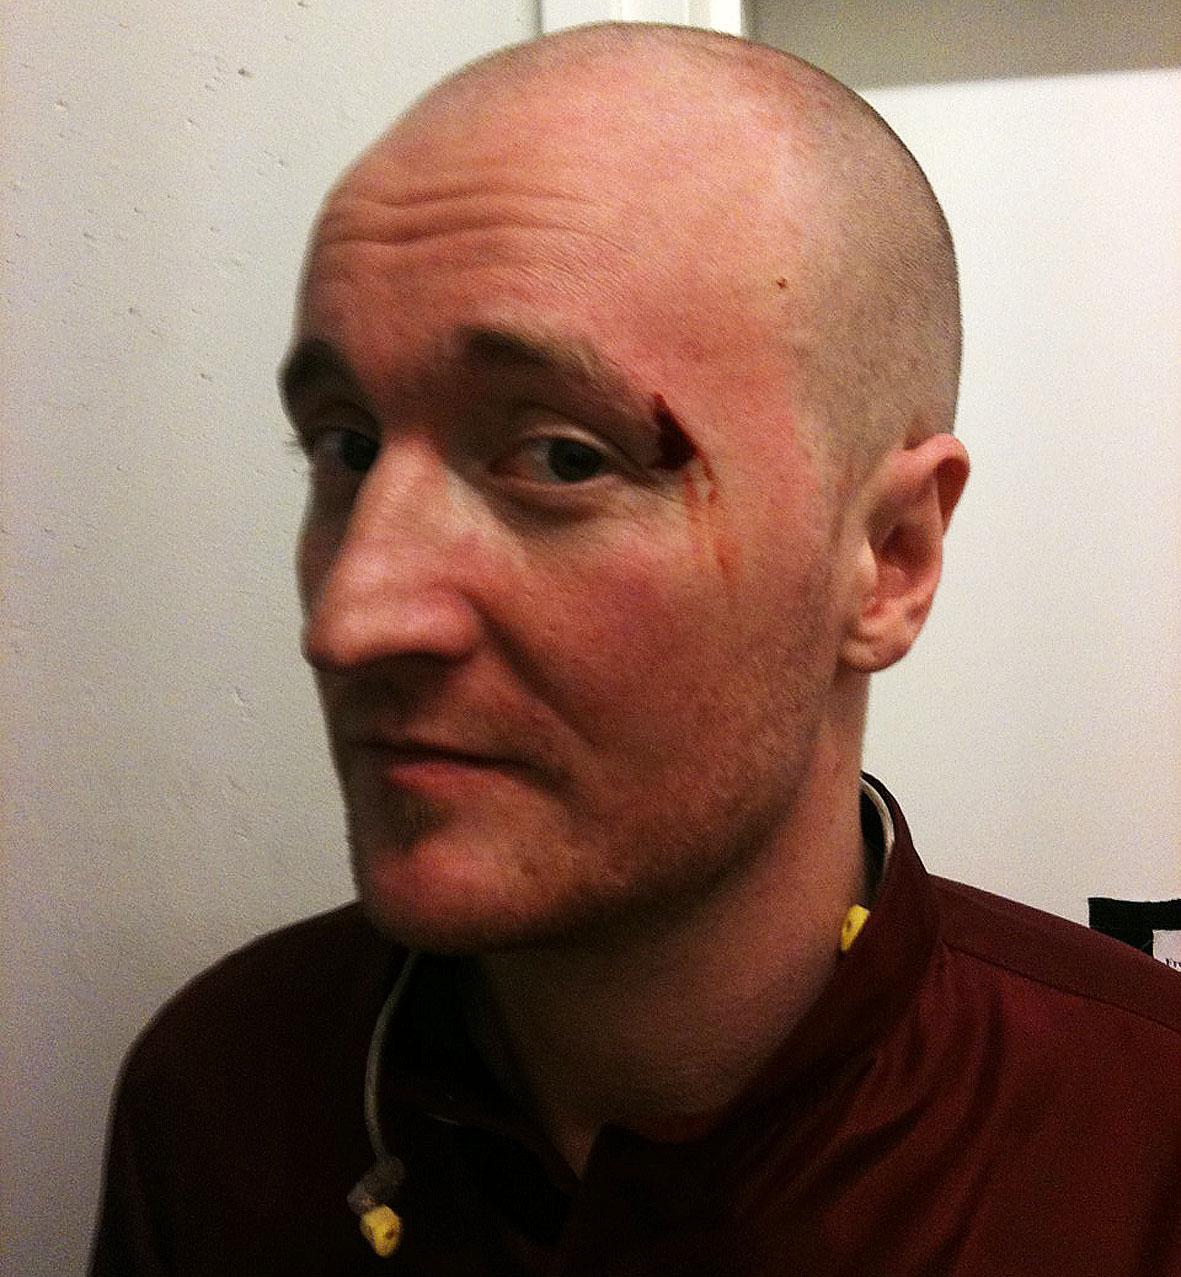 SPRUCKET ÖGONBRYN Daniel ”The Moniker” Karlsson råkade slå mickstativet så hårt mot huvudet att han fick ett blodigt sår under gårdagens repetition.